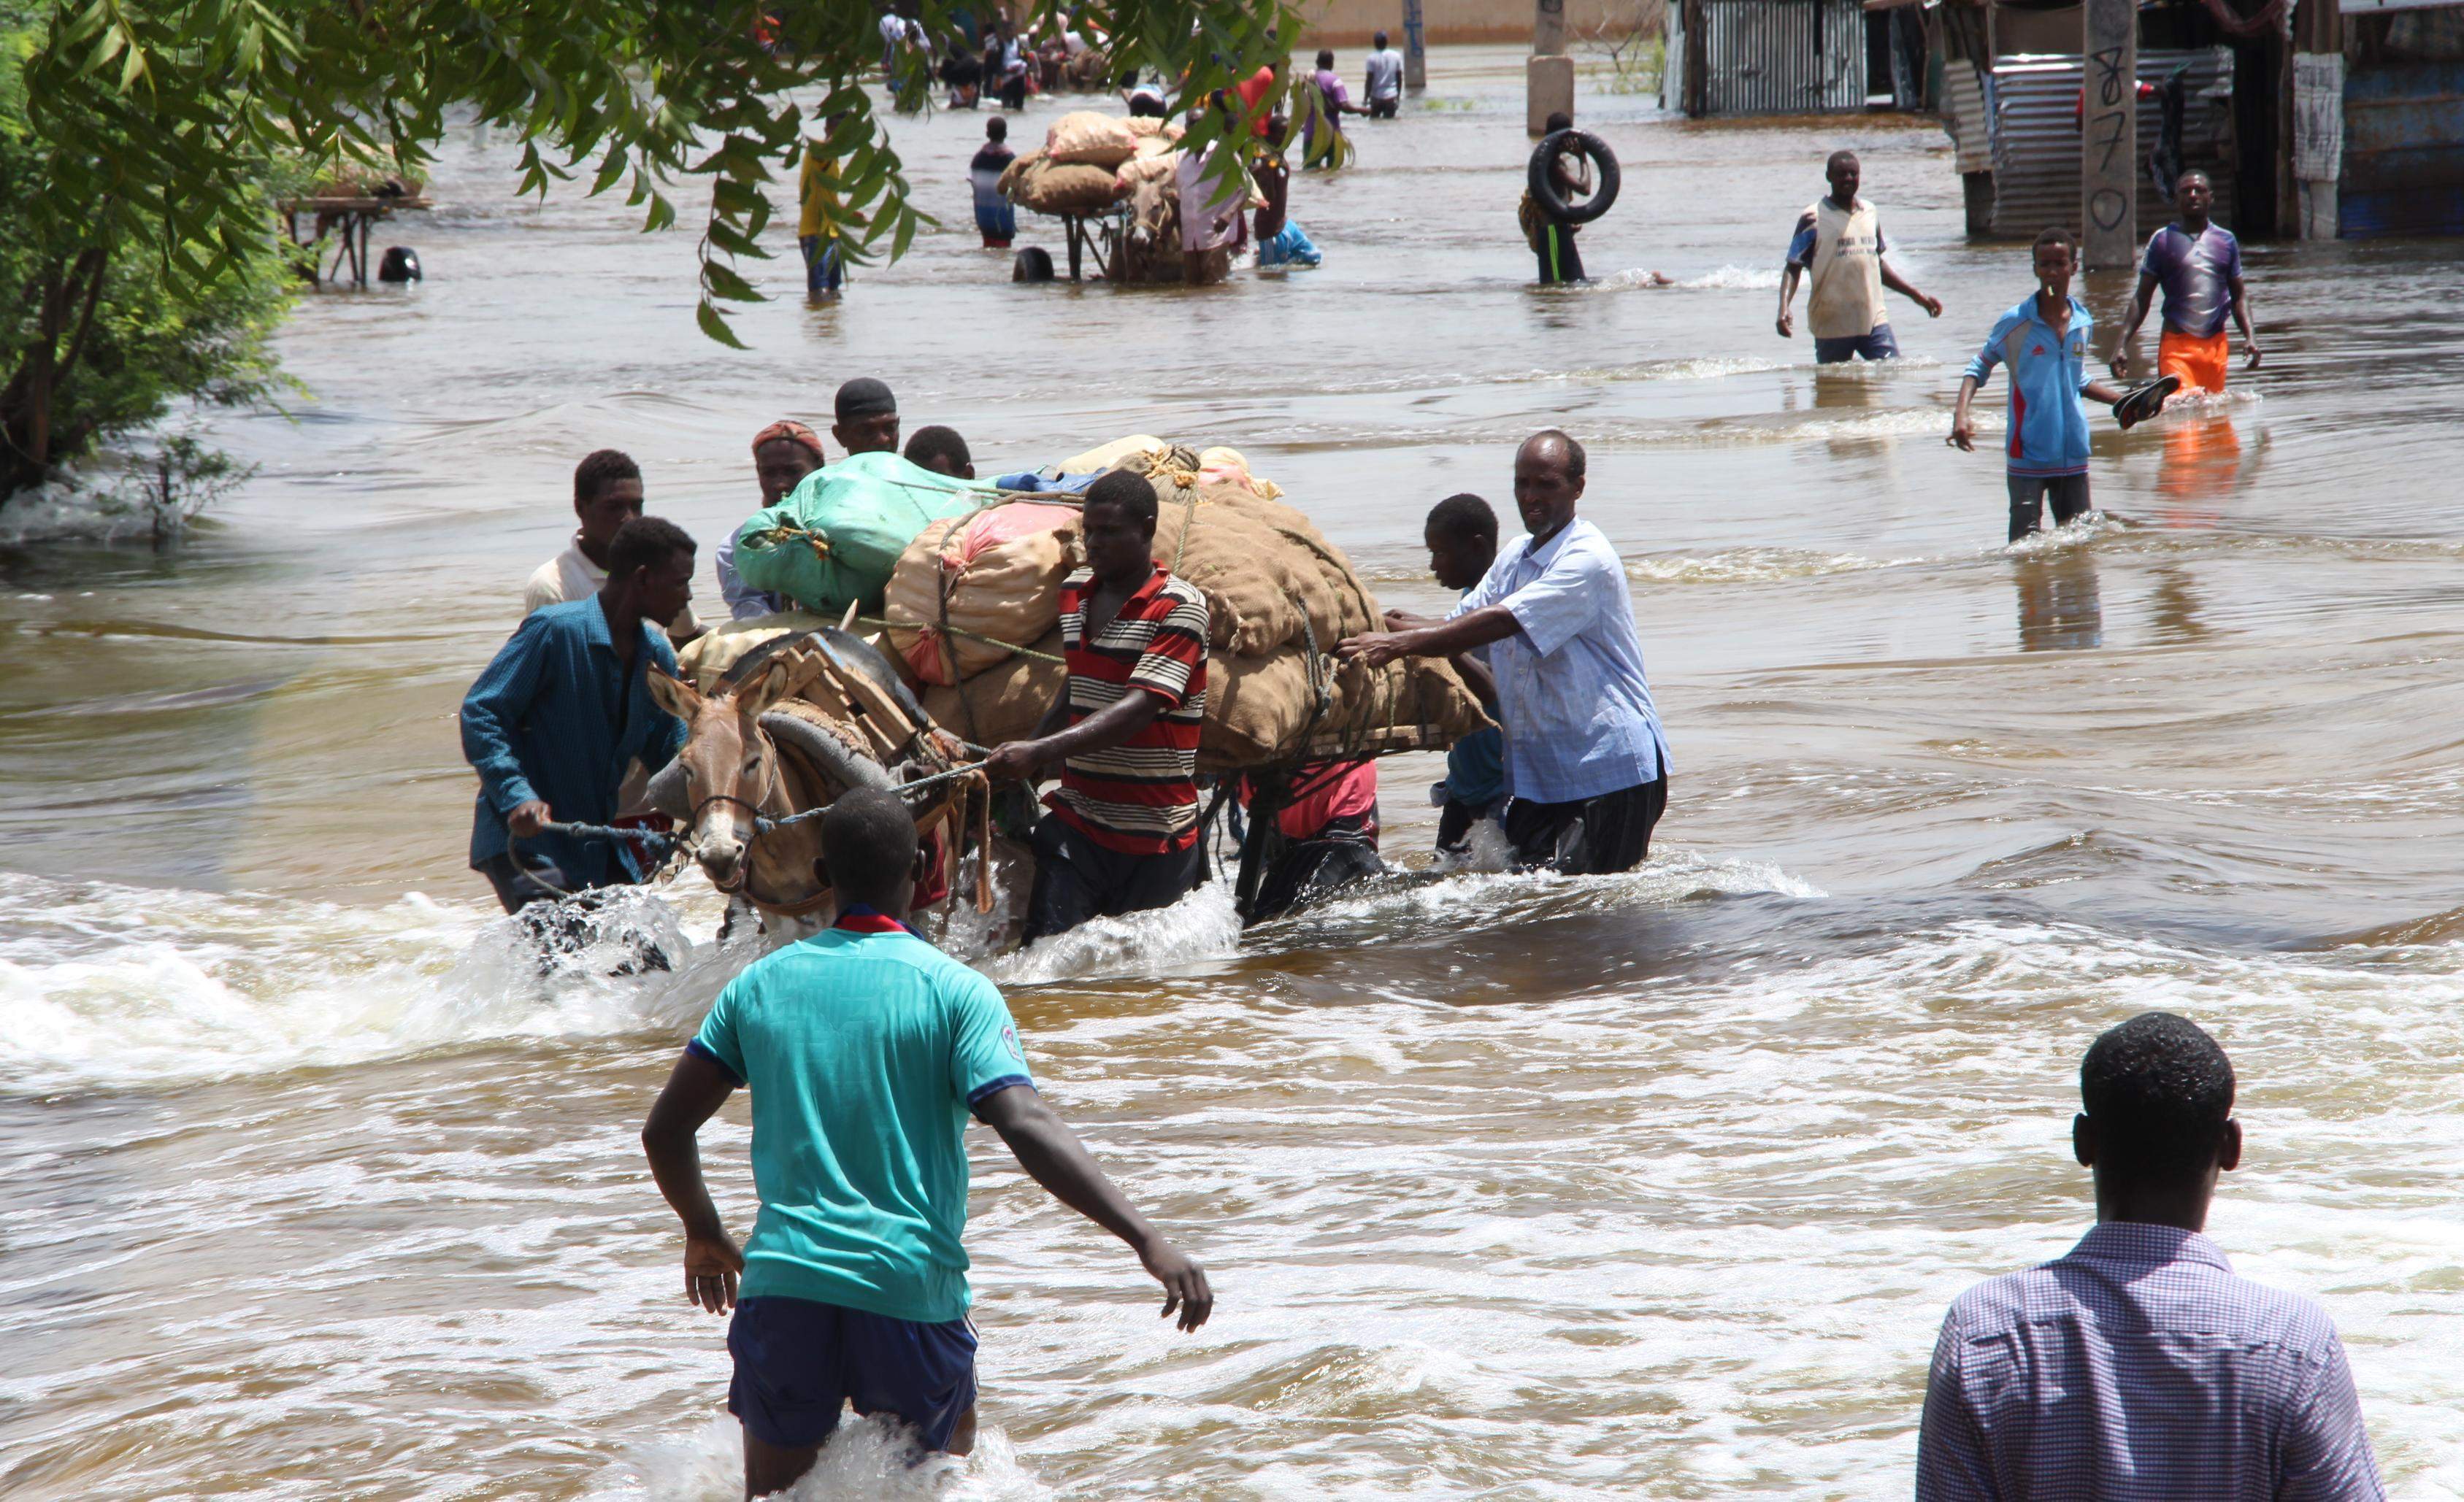 Se dobla el peligro por lluvias torrenciales en zonas de África a causa del cambio climático